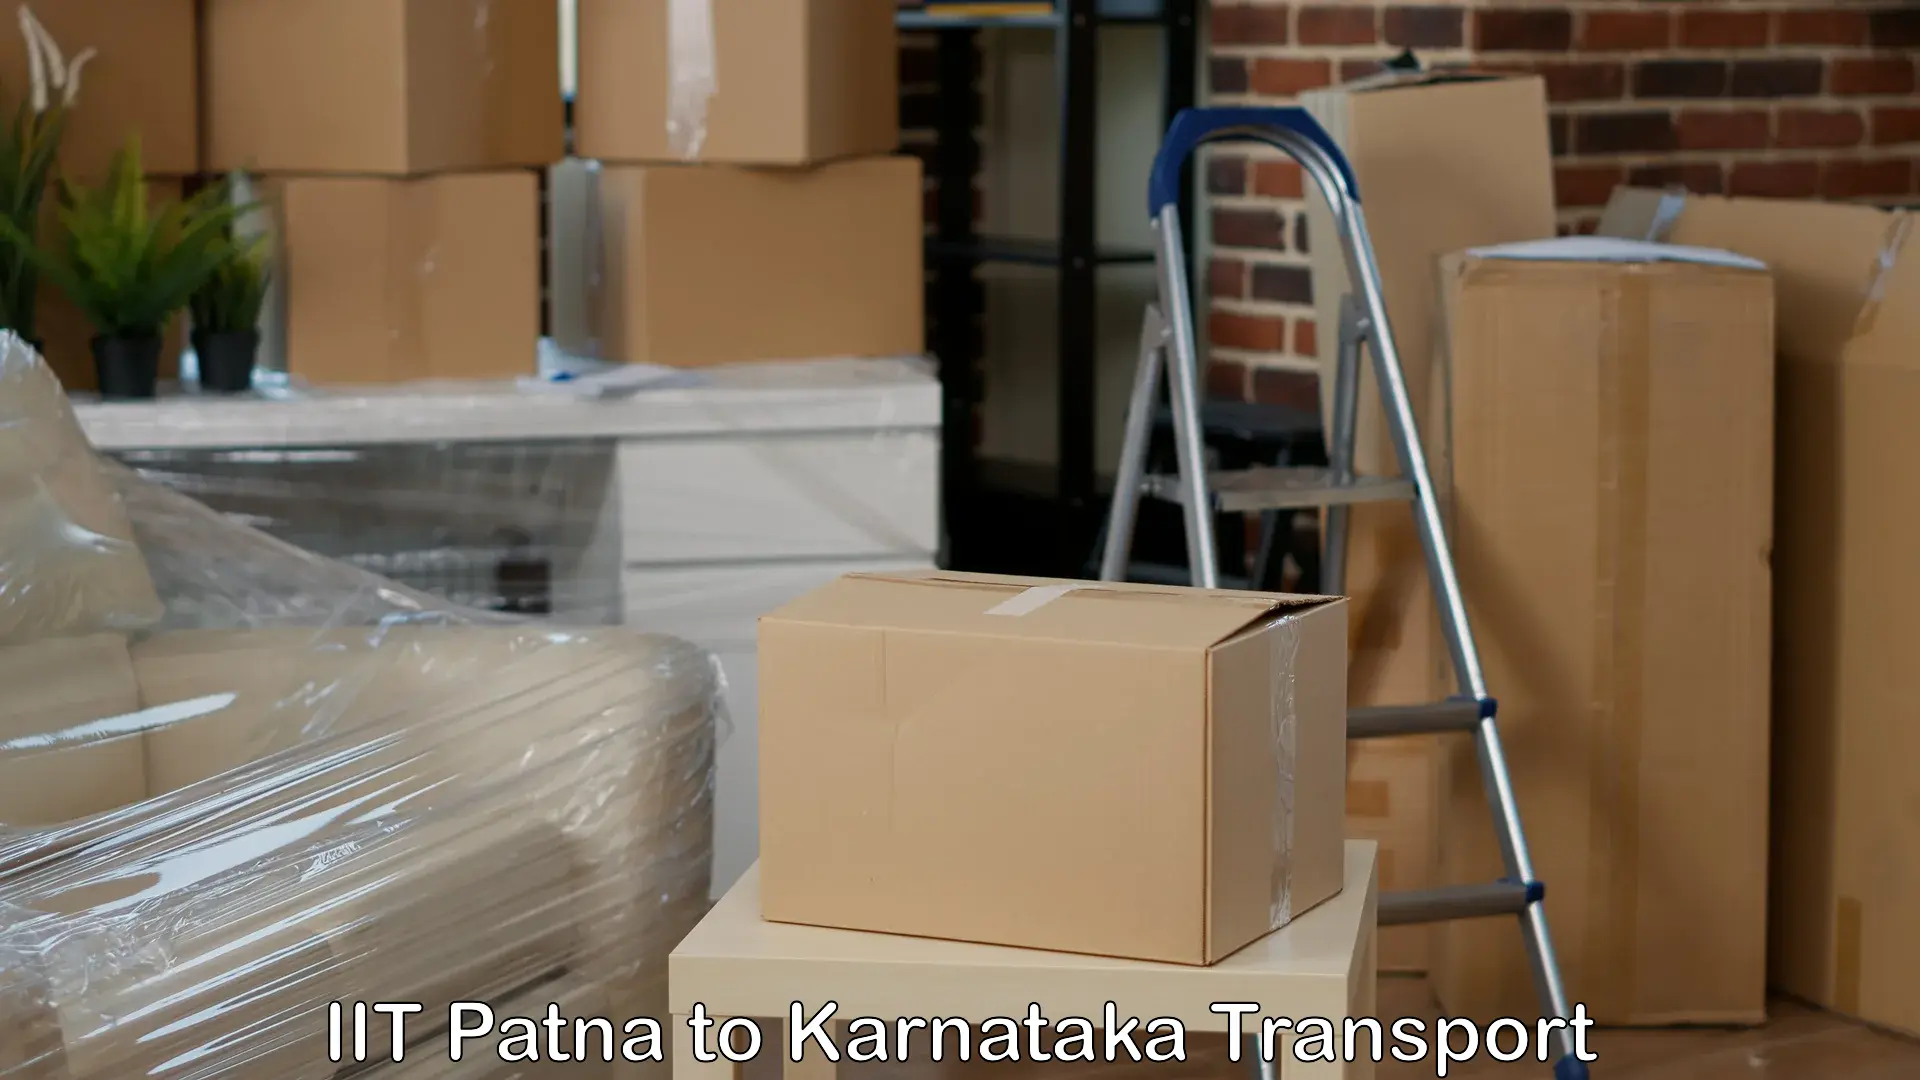 Goods delivery service IIT Patna to Tiptur